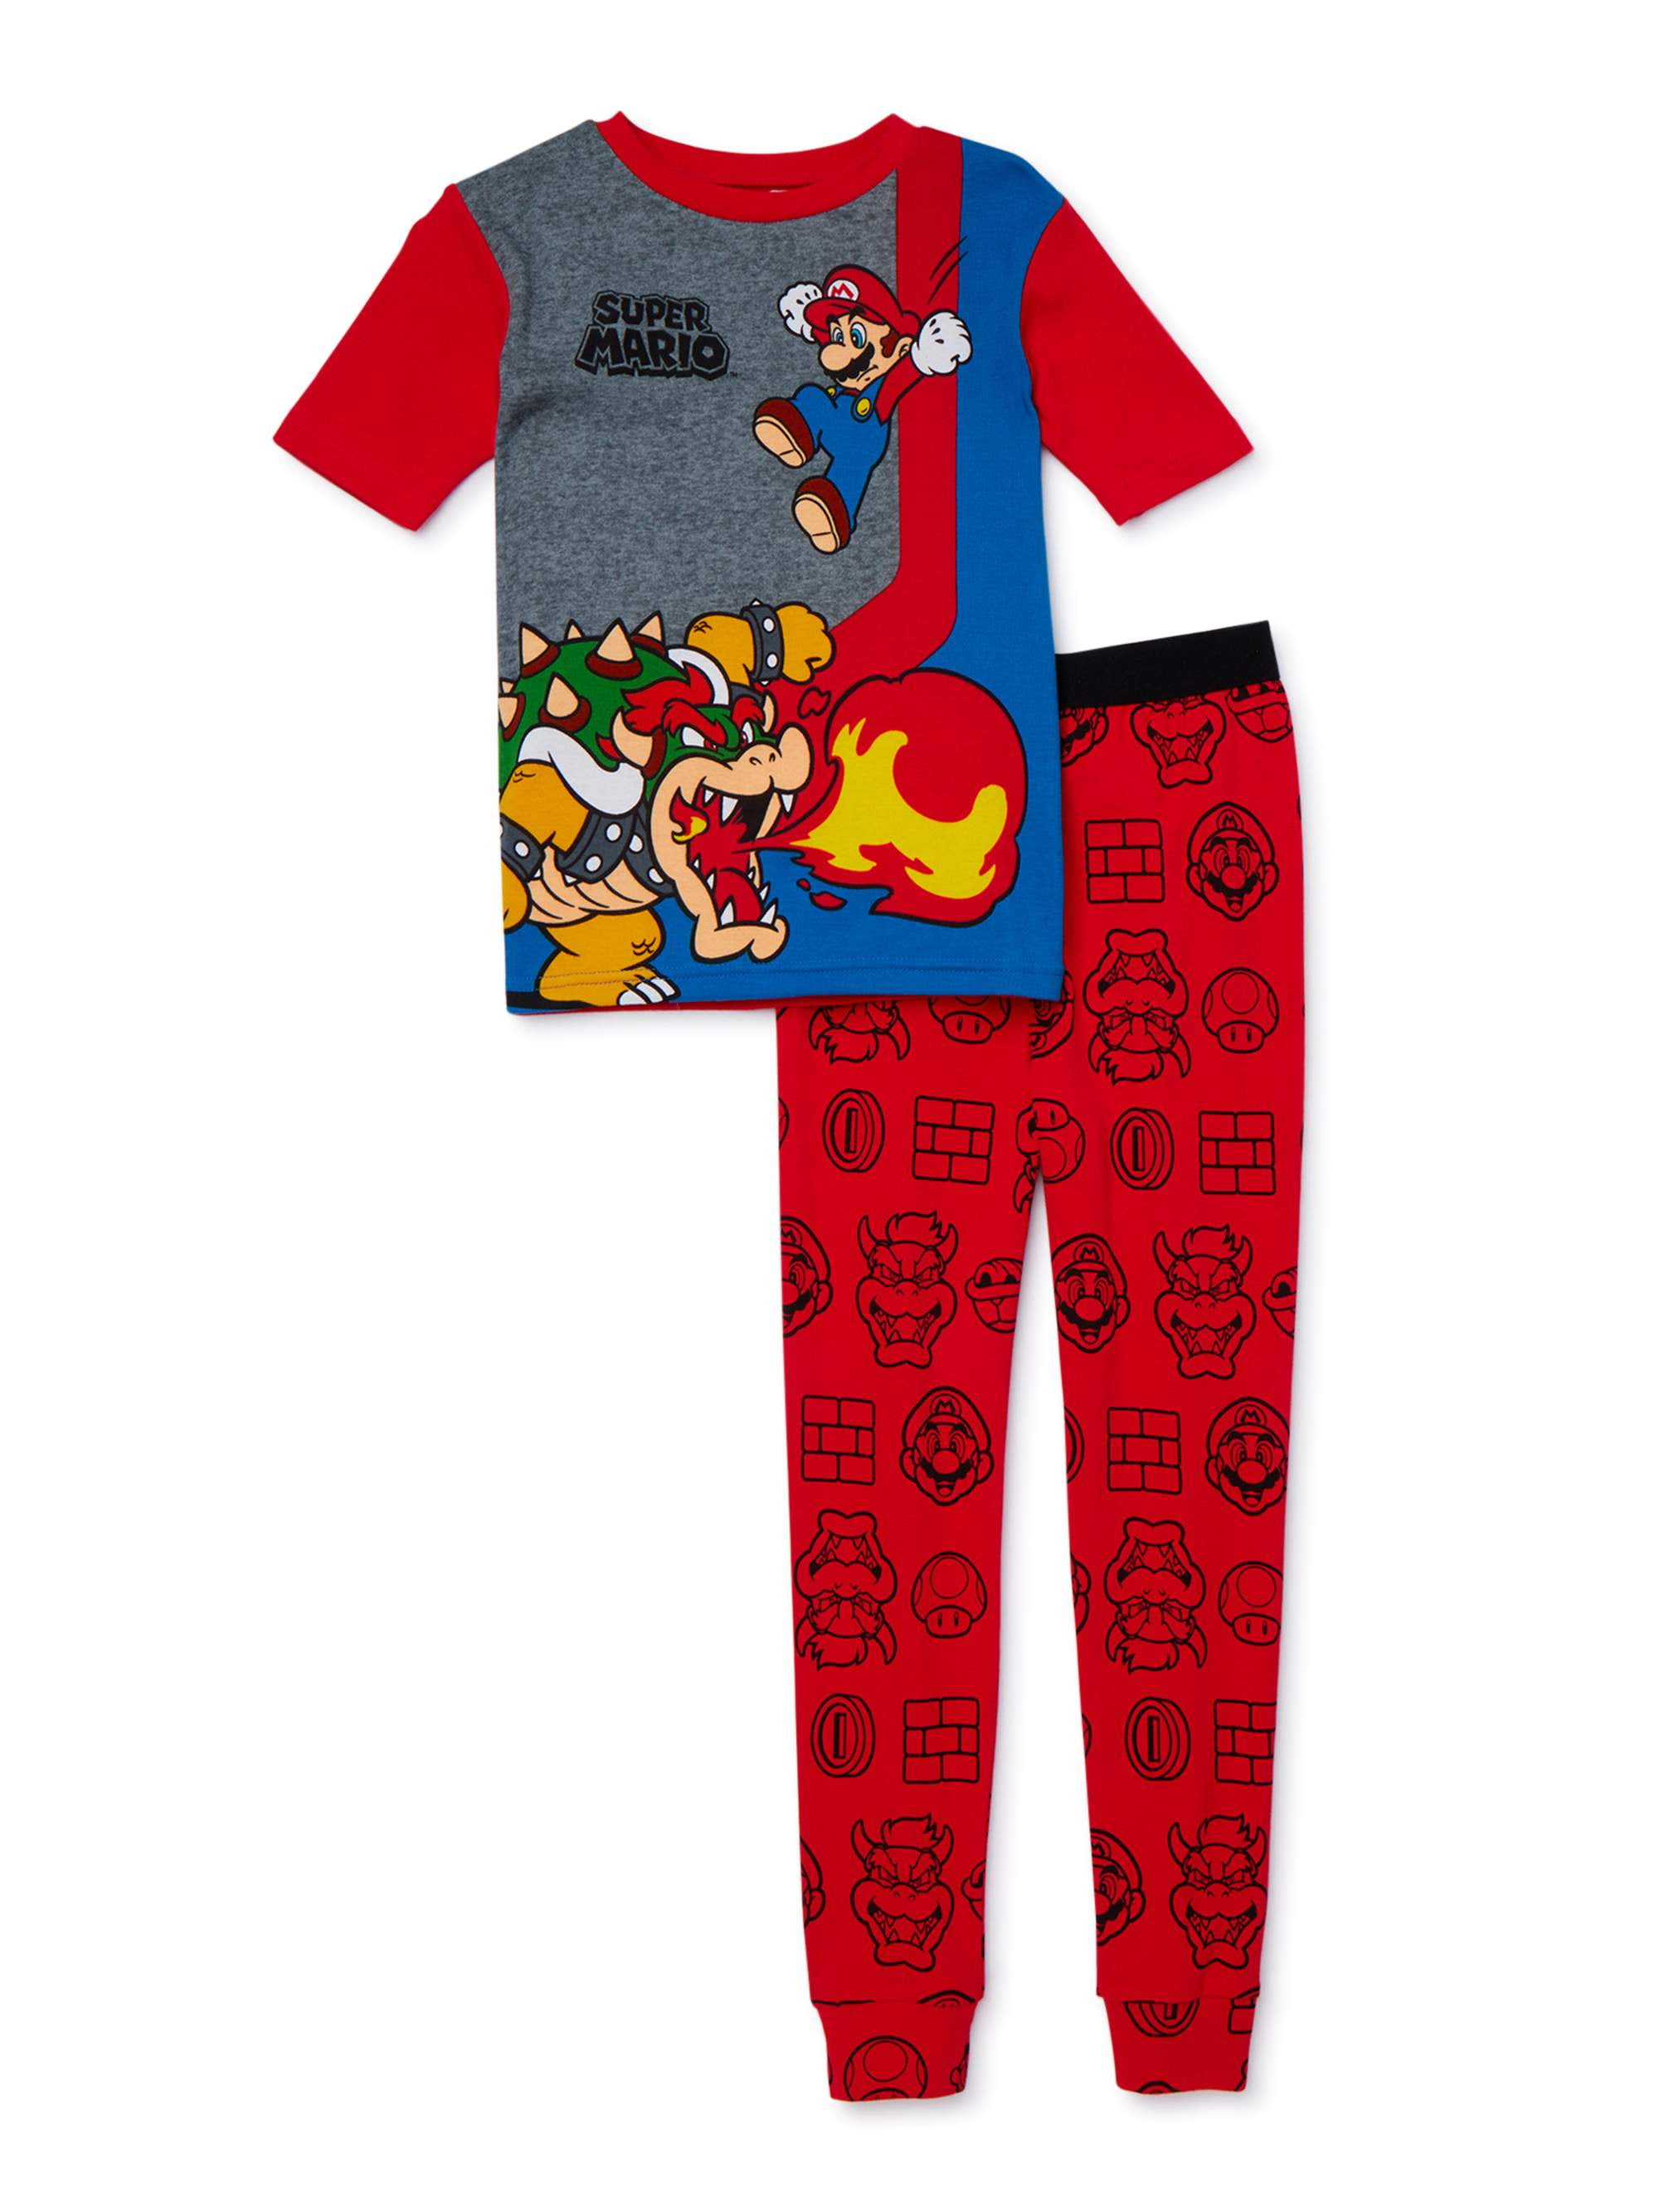 UK Kids Super Mario Game Print T Shirt Short Pants Set Outfits Lungewear Pajamas 